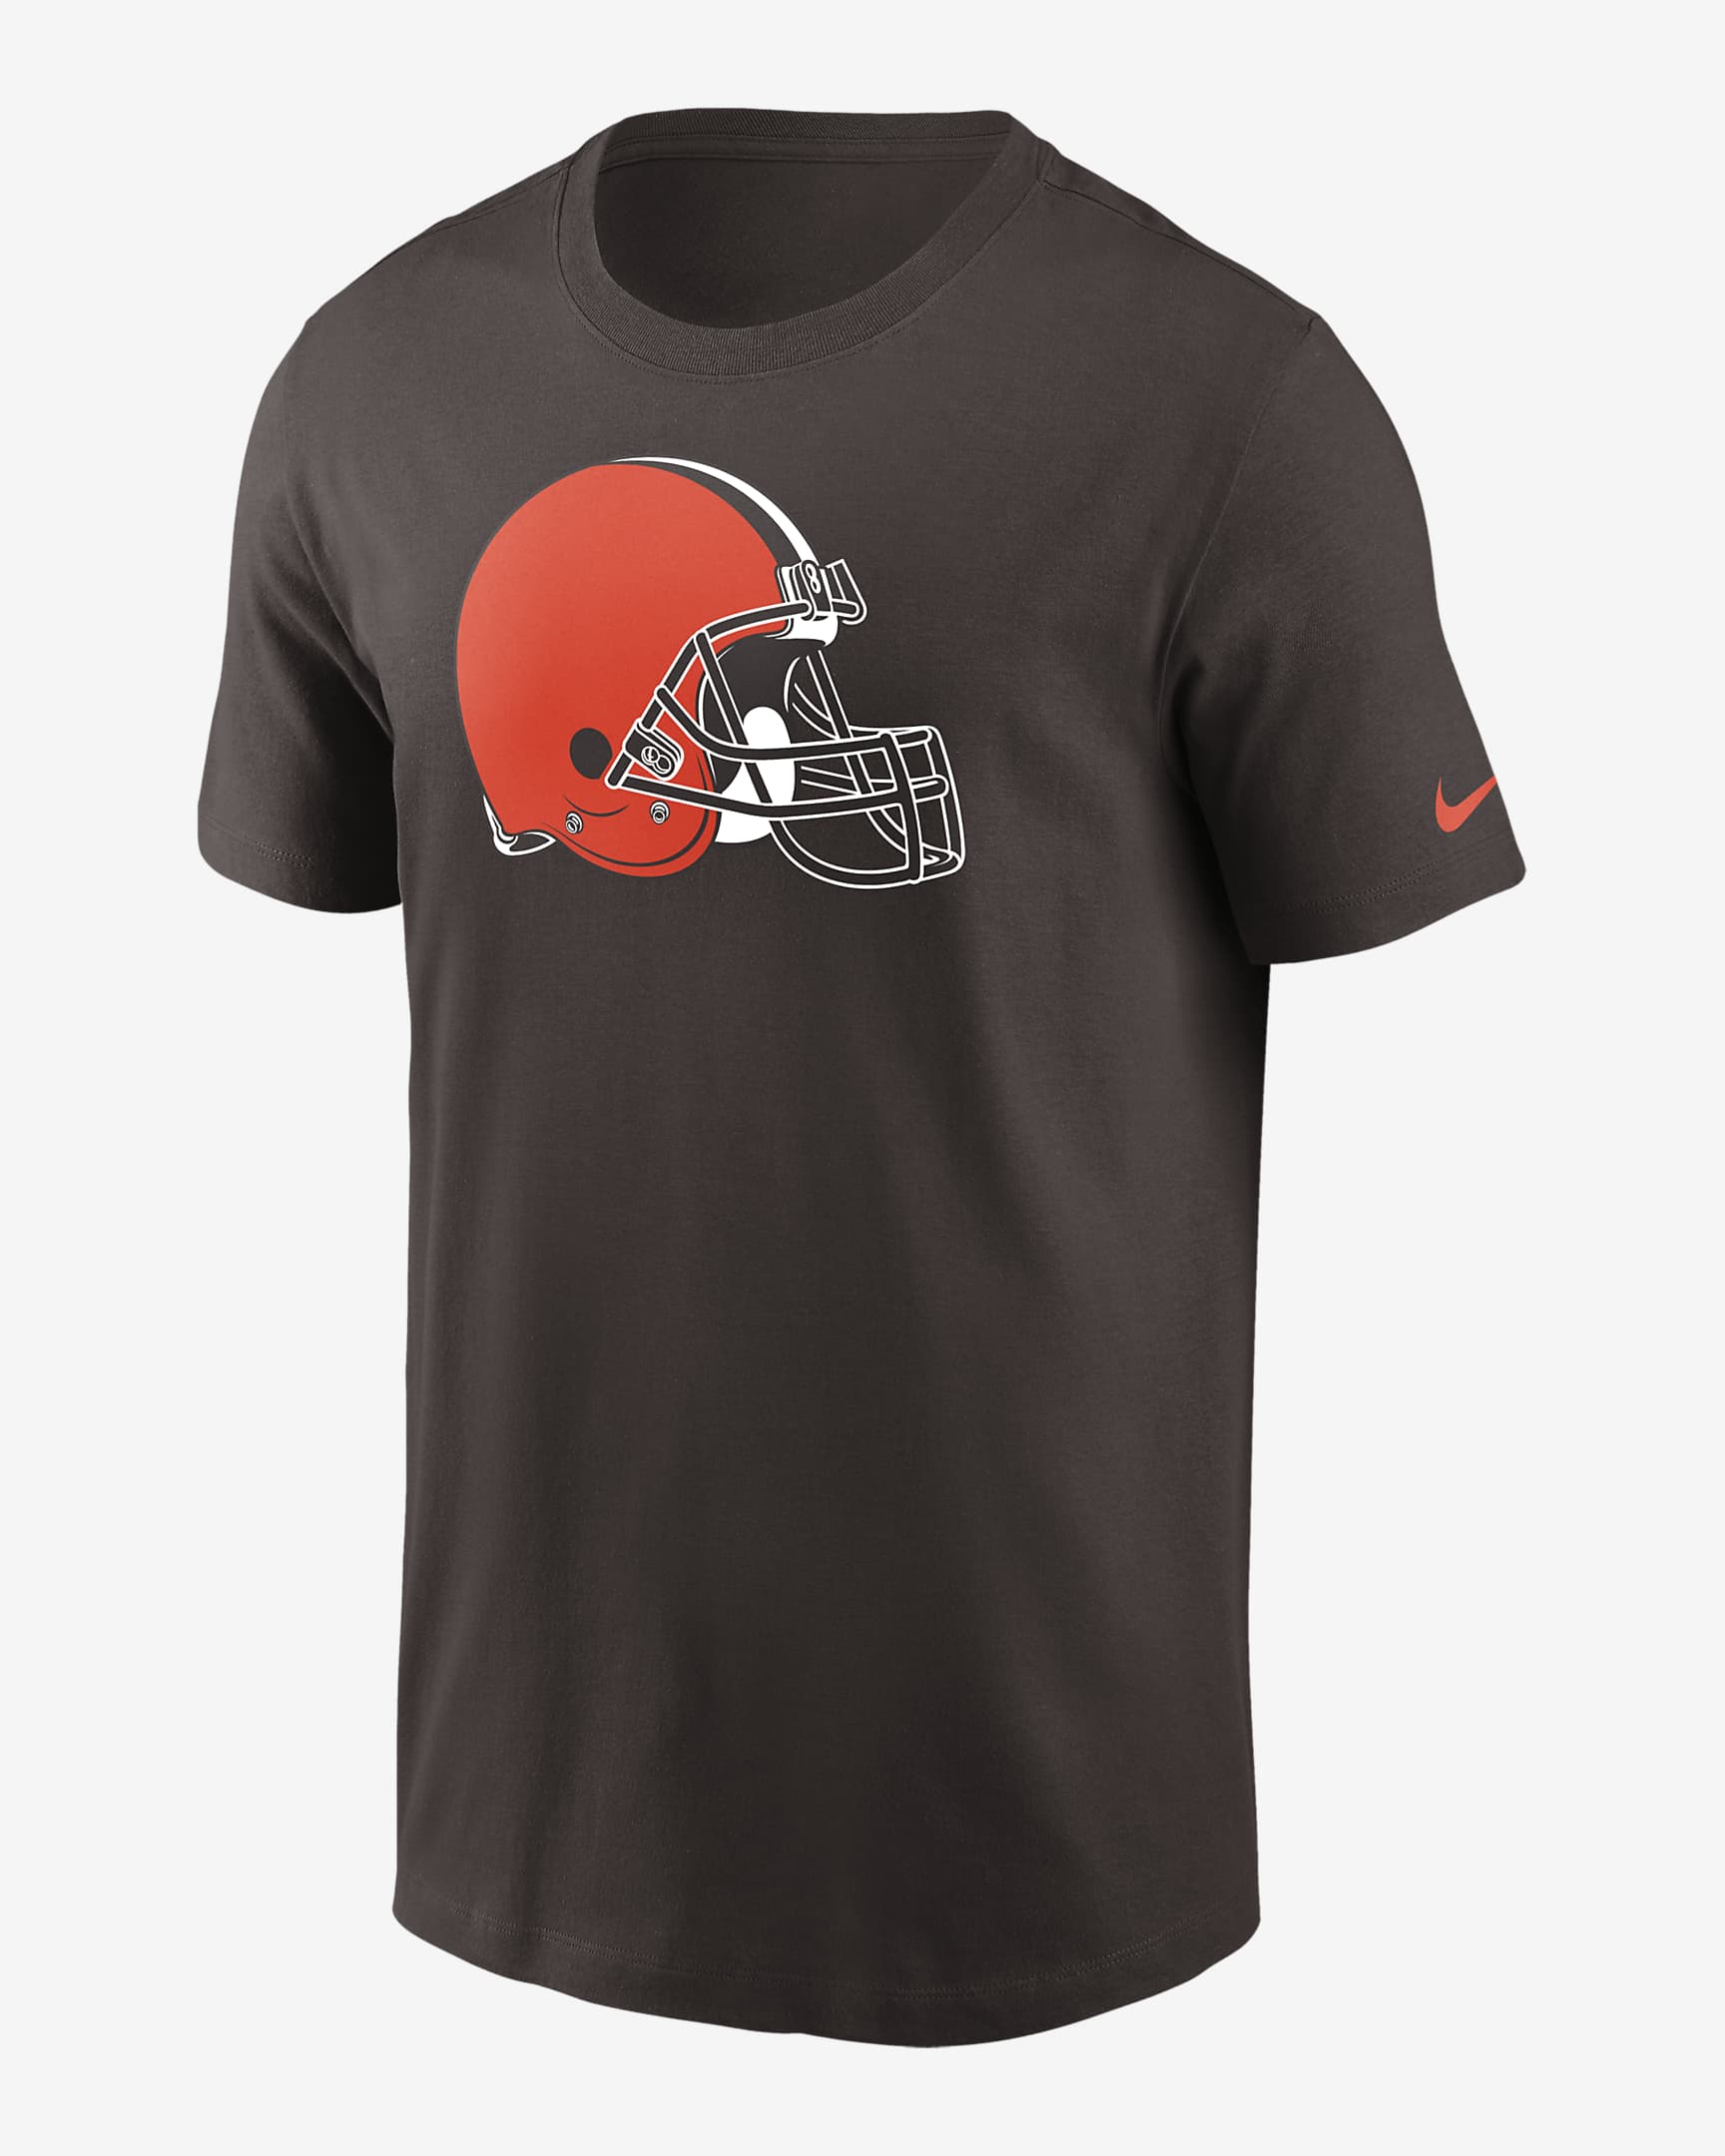 Playera para hombre Nike Logo Essential (NFL Cleveland Browns). Nike.com